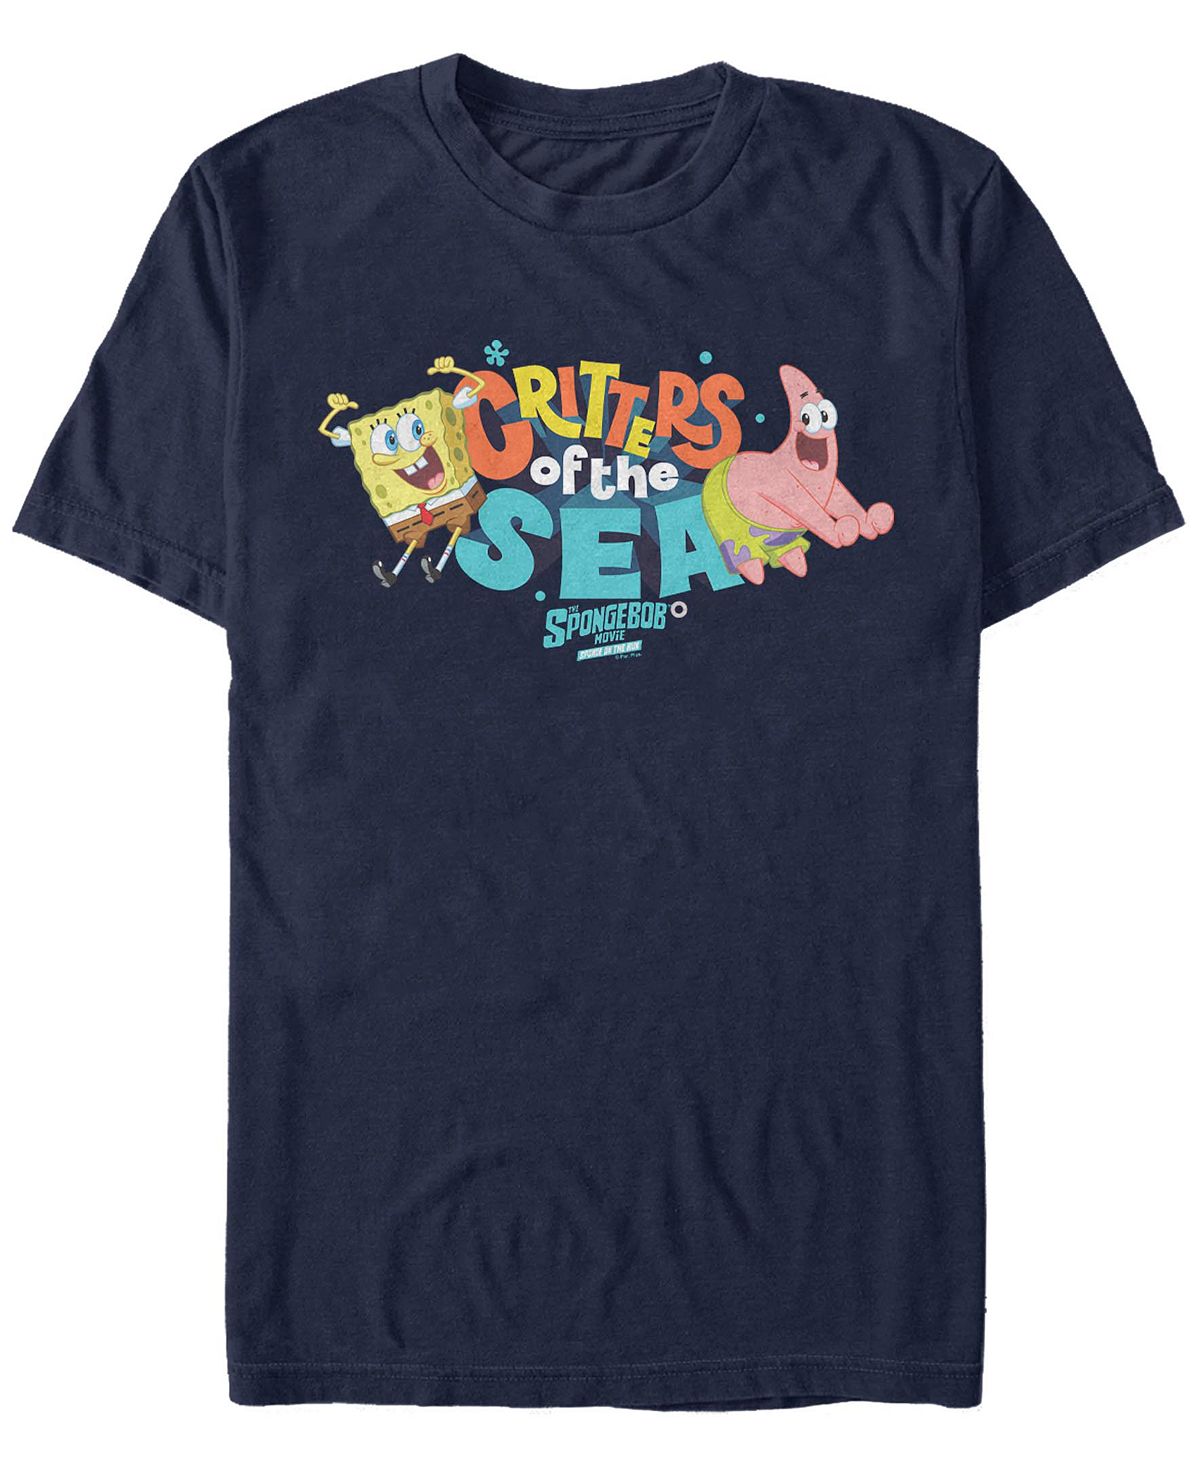 Мужская футболка sea critter friends Fifth Sun, синий цена и фото